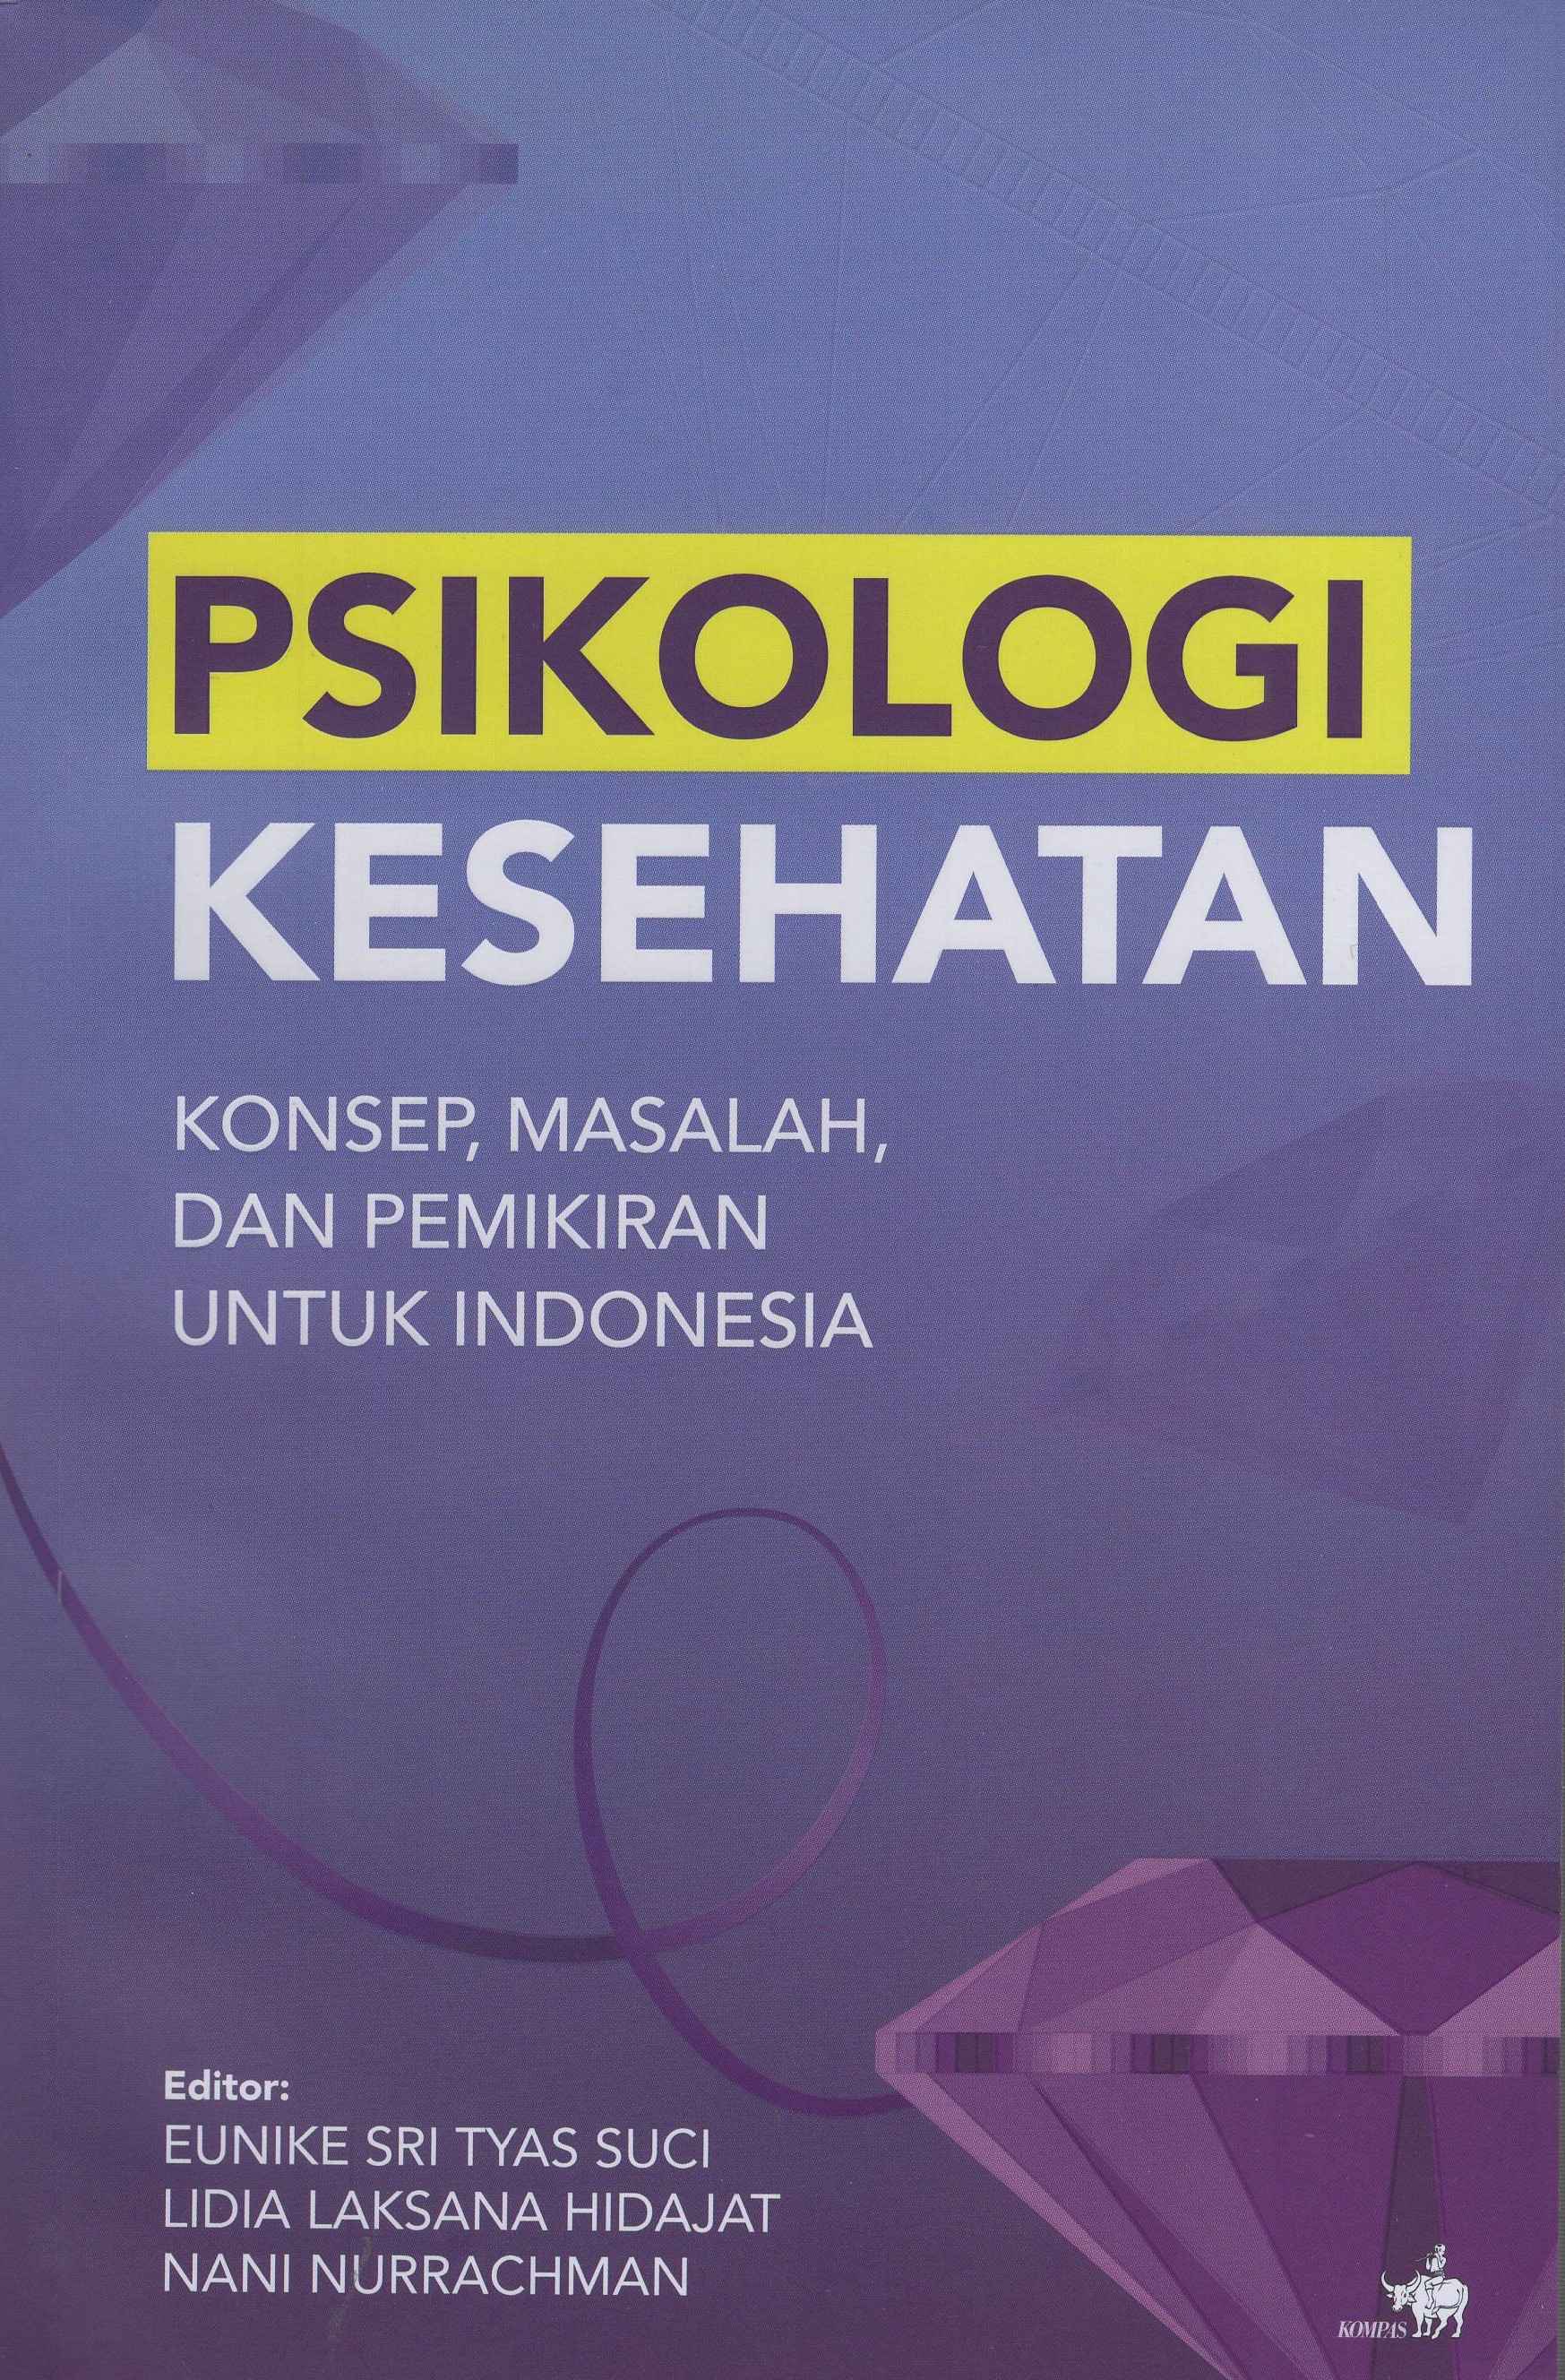 Psikologi Kesehatan: Konsep, Masalah, dan Pemikiran Untuk Indonesia